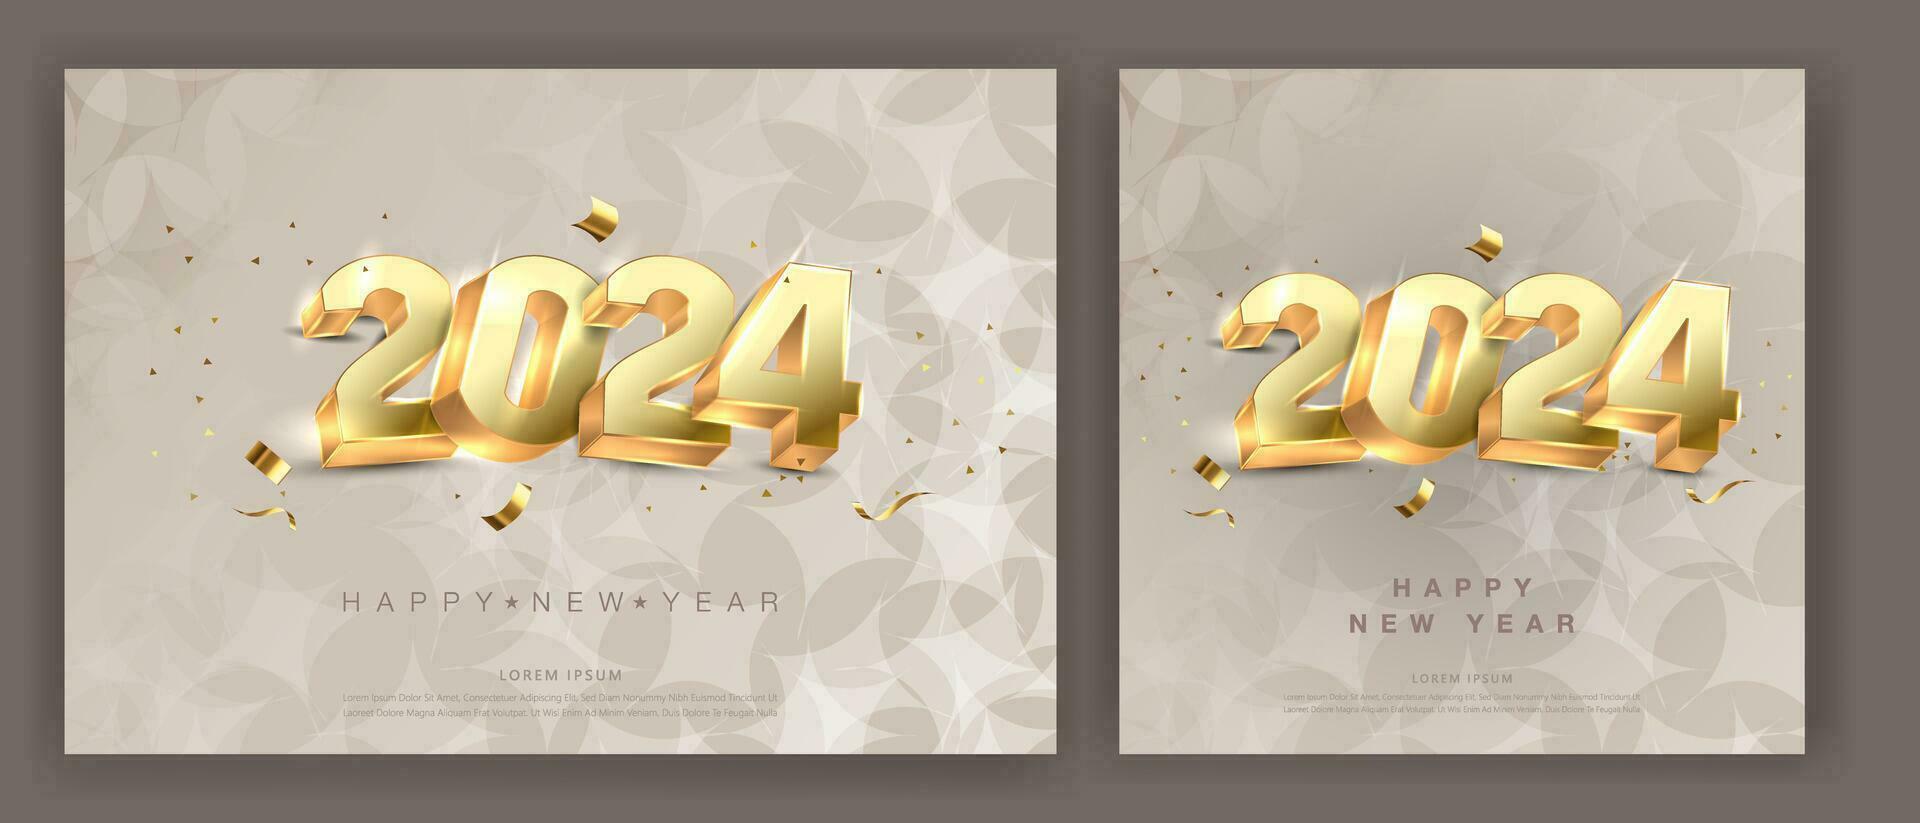 3d Gold Vektor Design von glücklich Neu Jahr 2024 mit glühend glänzend Gold Ziffern. Prämie Vektor Design zum 2024 Neu Jahr Banner,